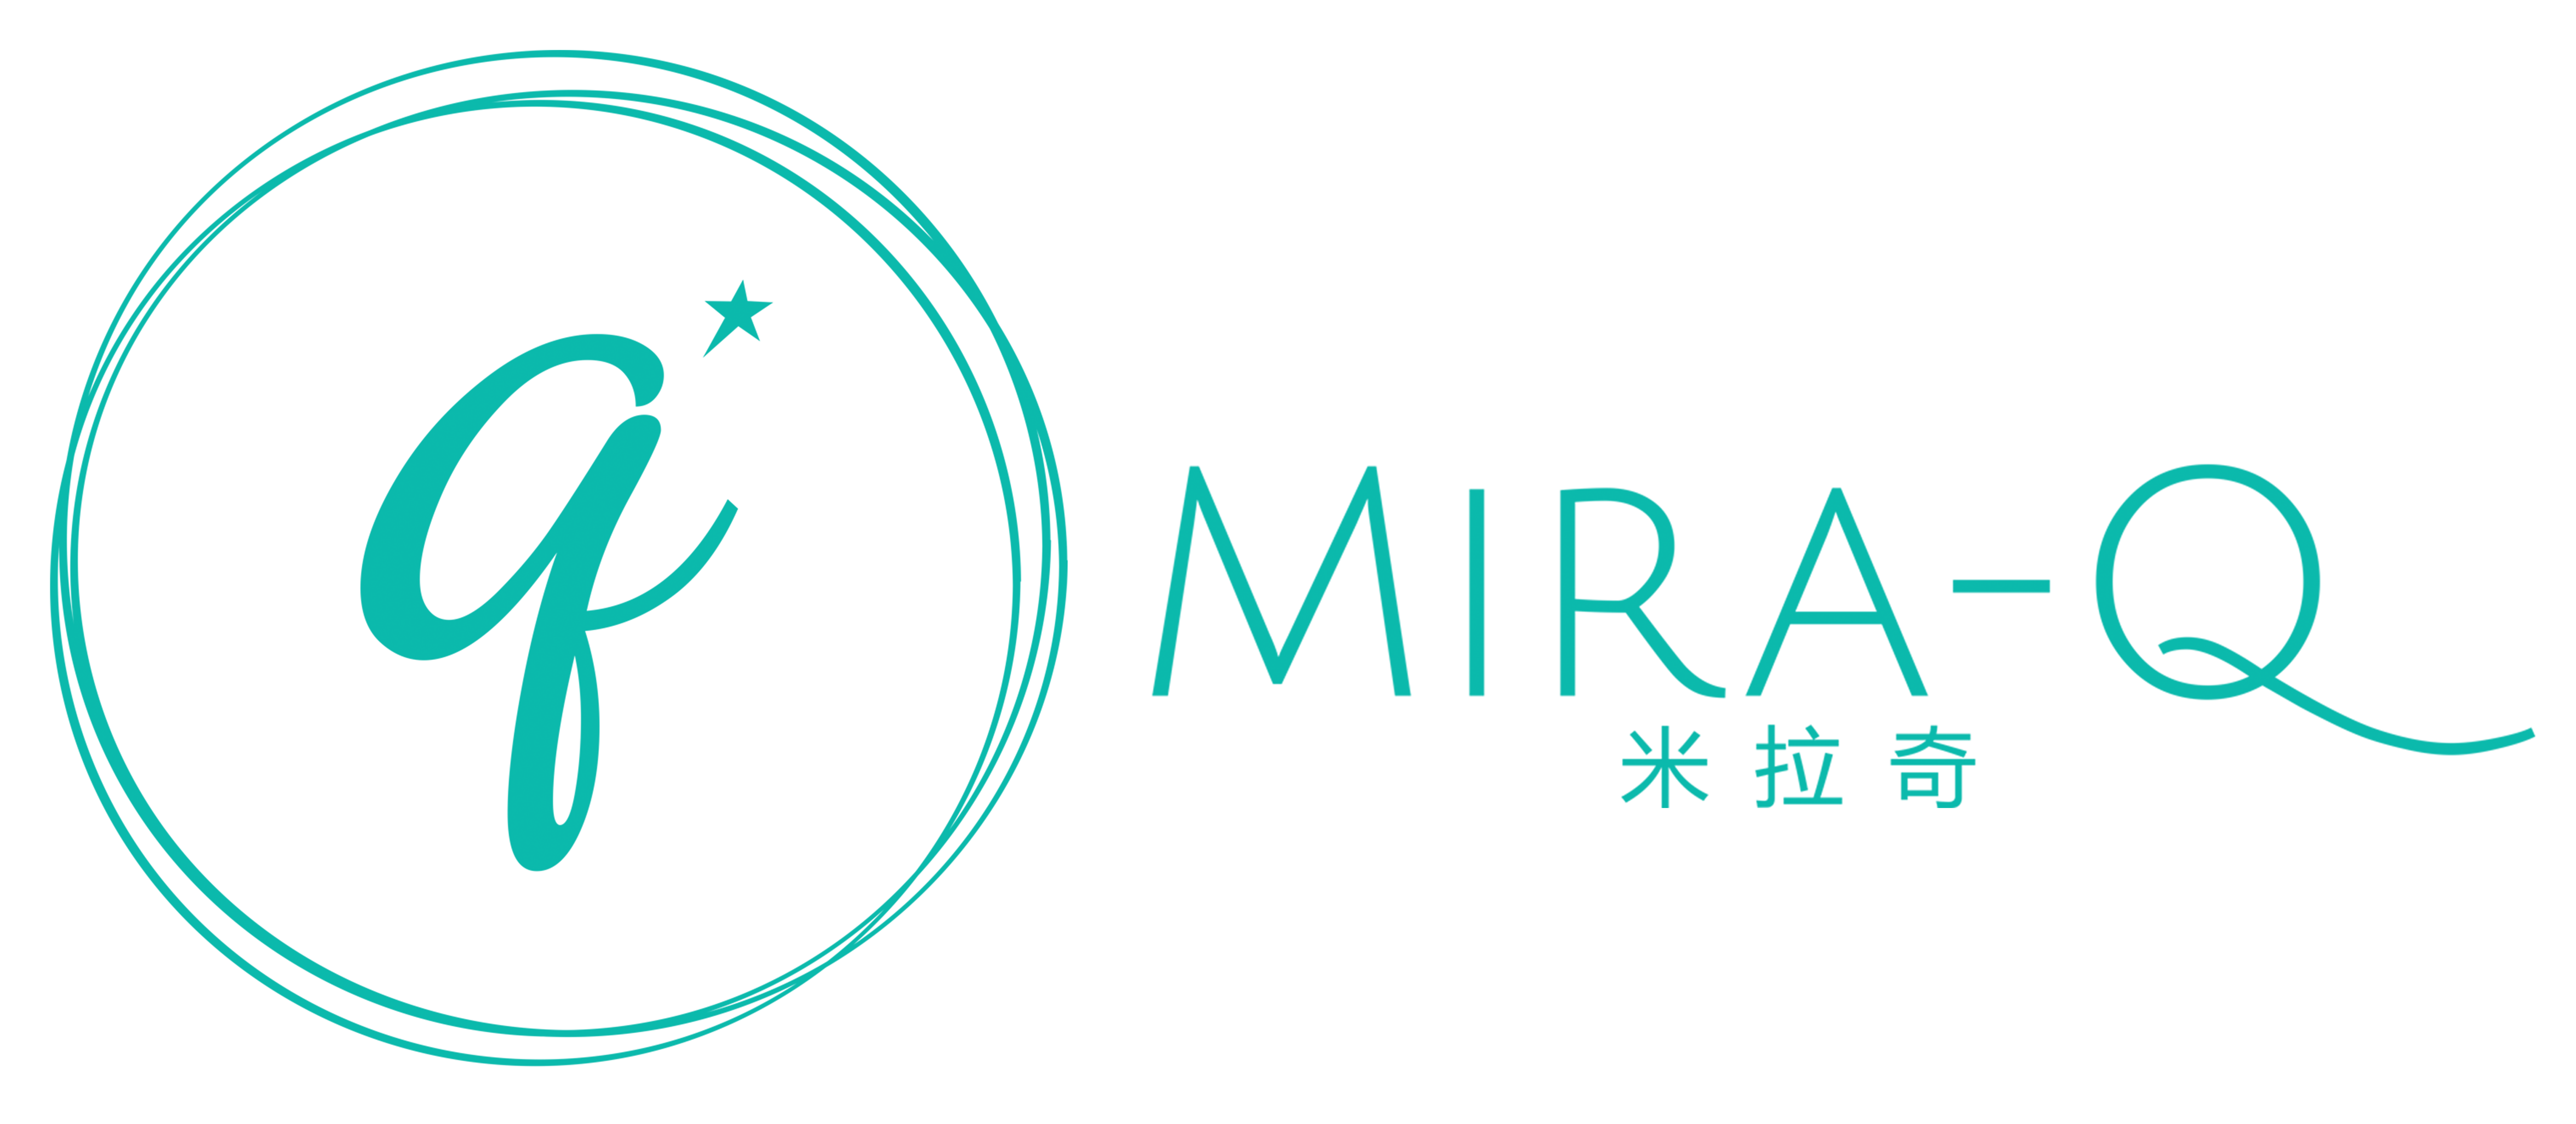 Mira-Q Official